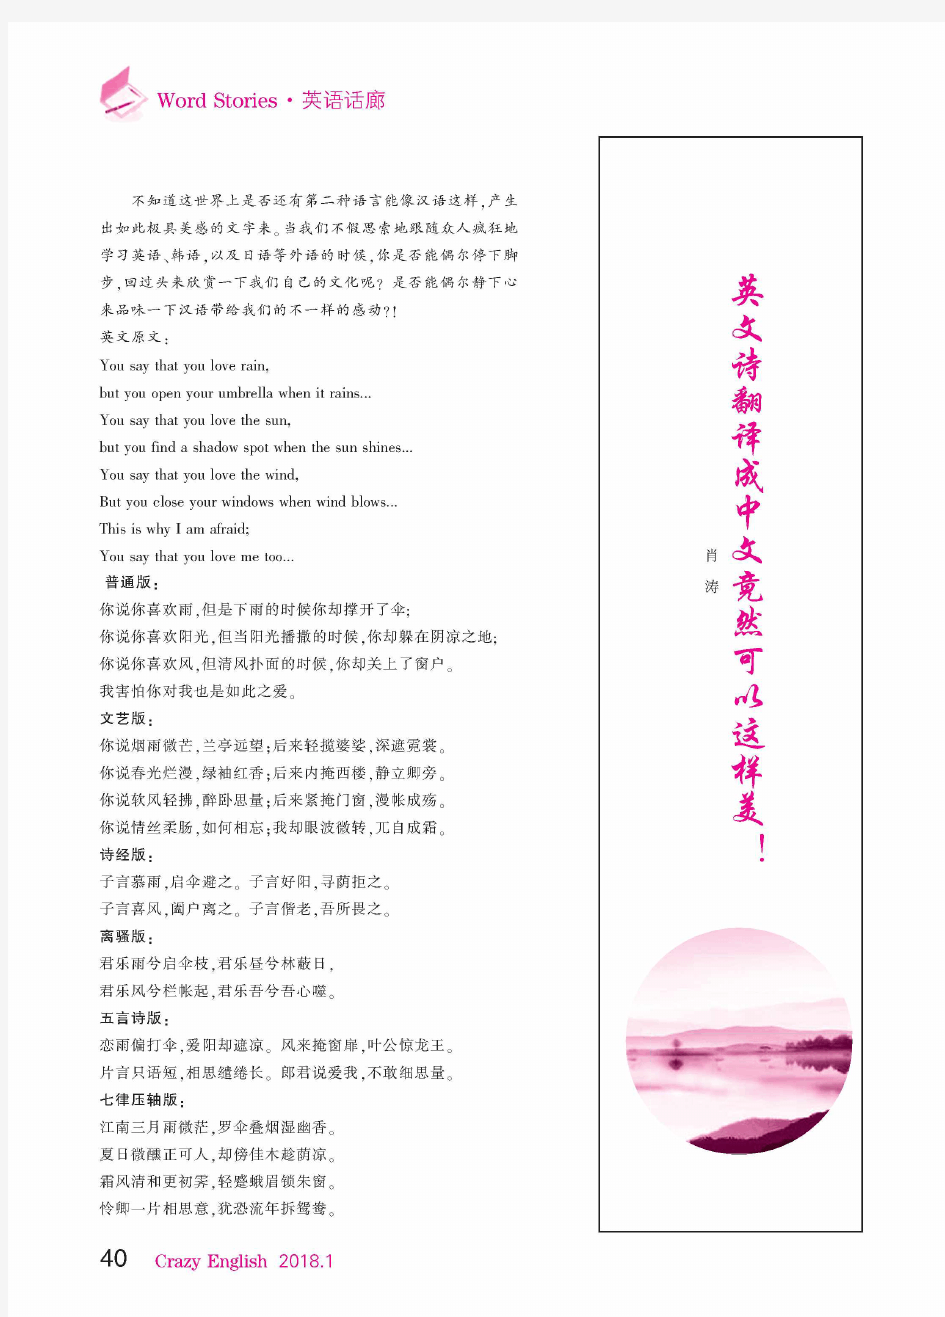 英文诗翻译成中文竟然可以这样美!